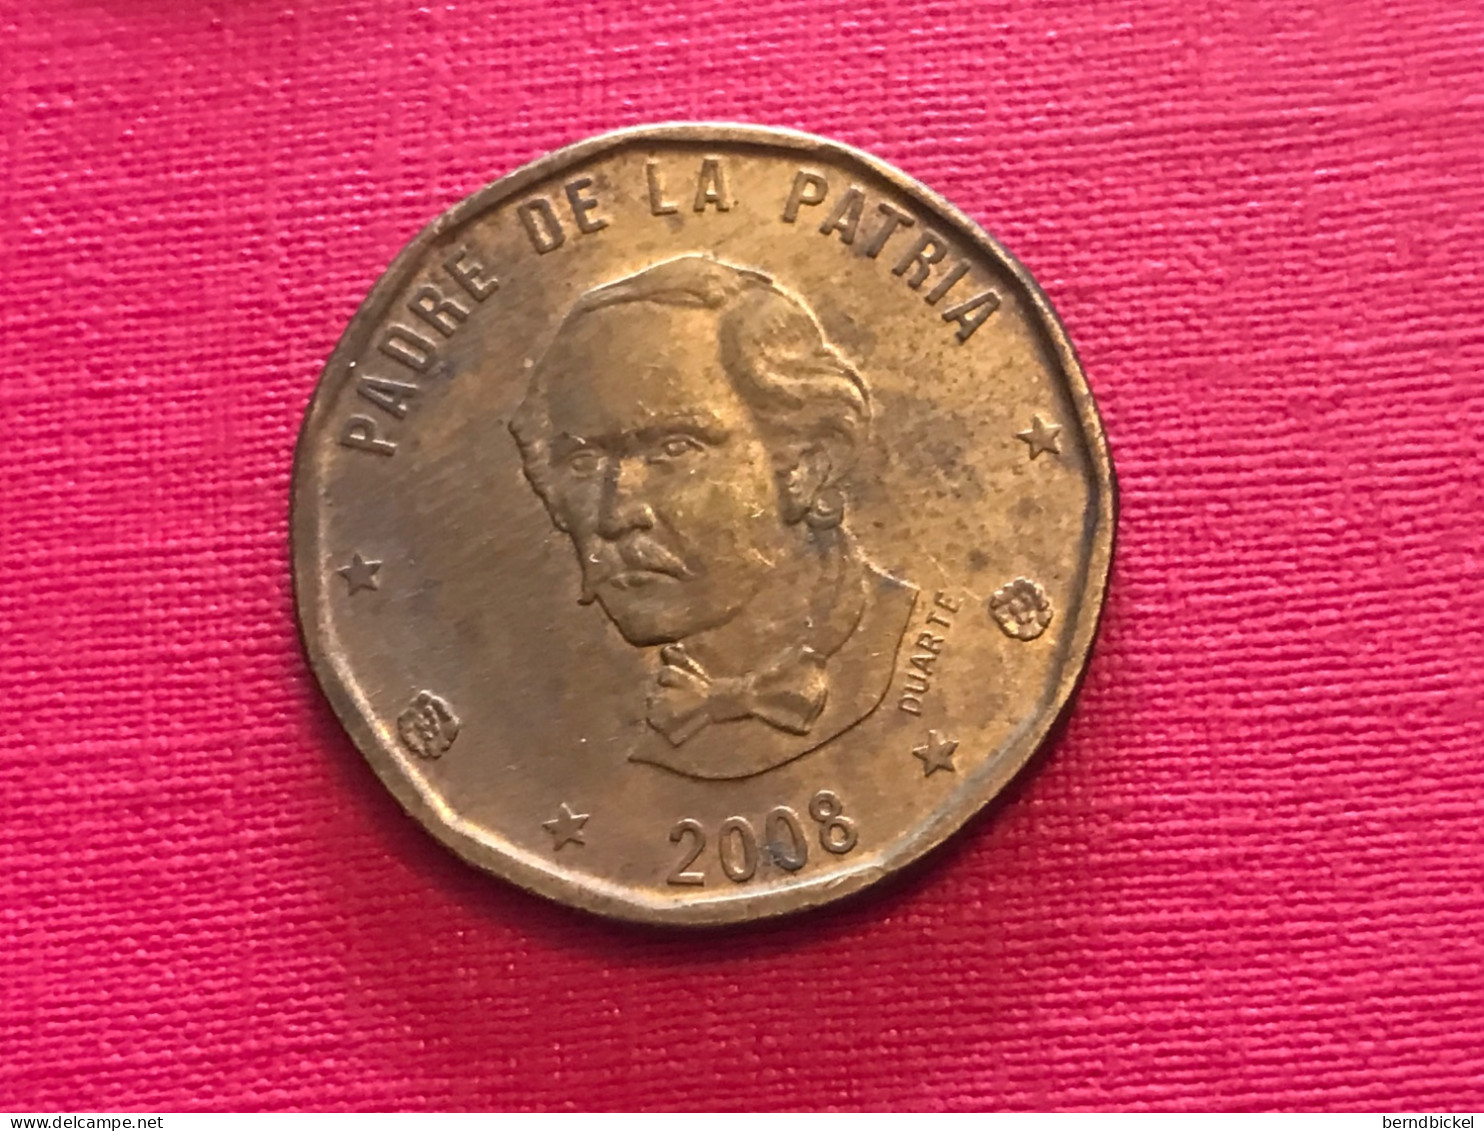 Münze Münzen Umlaufmünze Dominikanische Republik 1 Peso 2008 - Dominicaanse Republiek